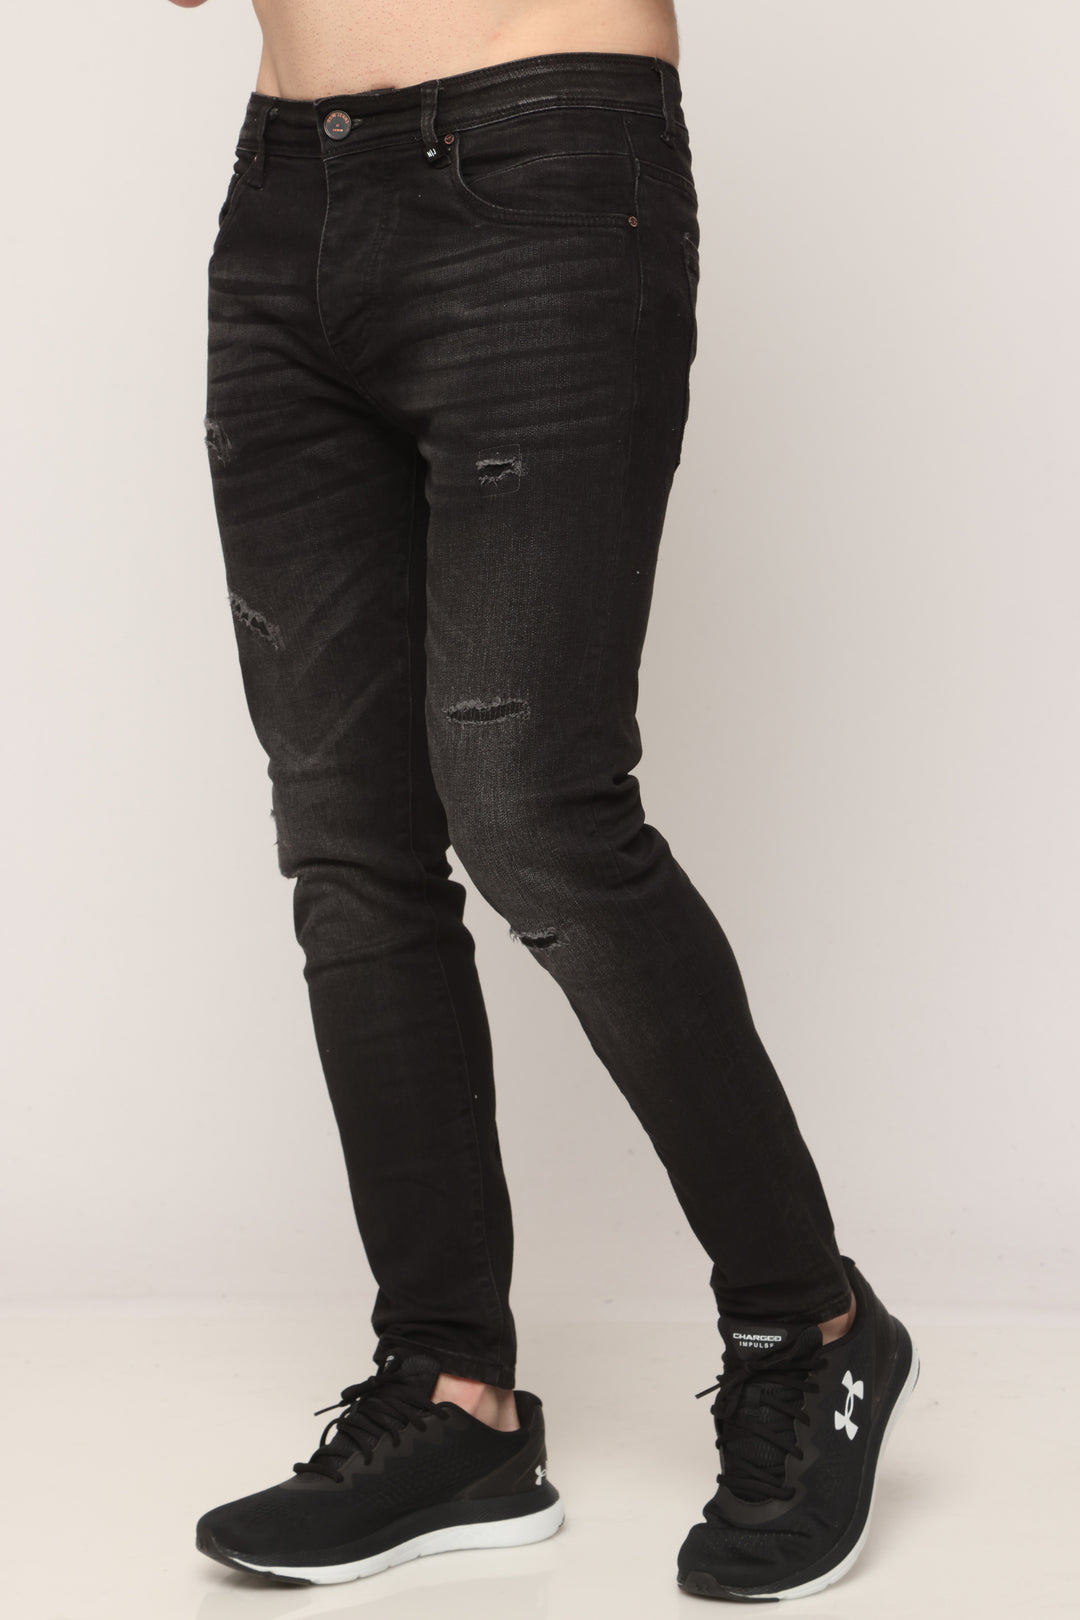 11233 ג'ינס סופר סקיני - canavaro jeans